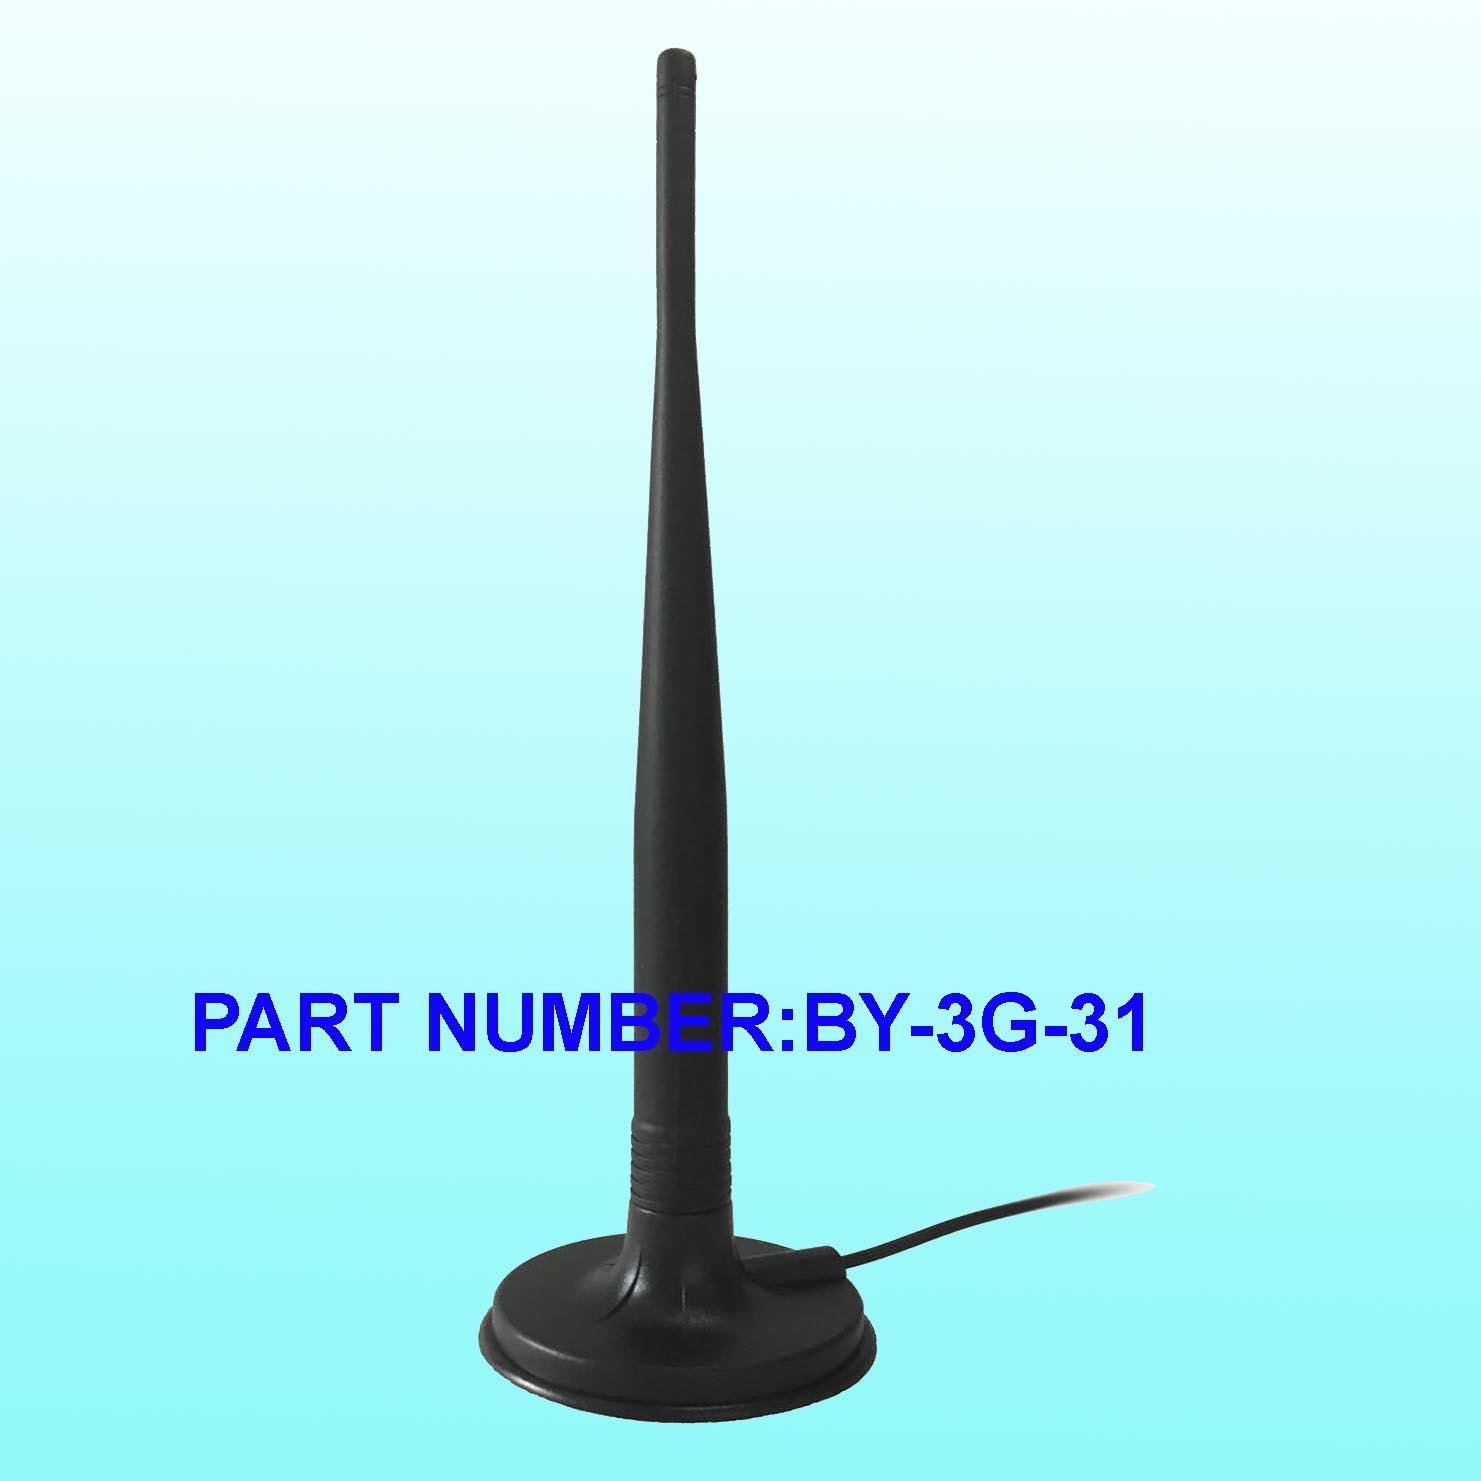 3G Base Antenna